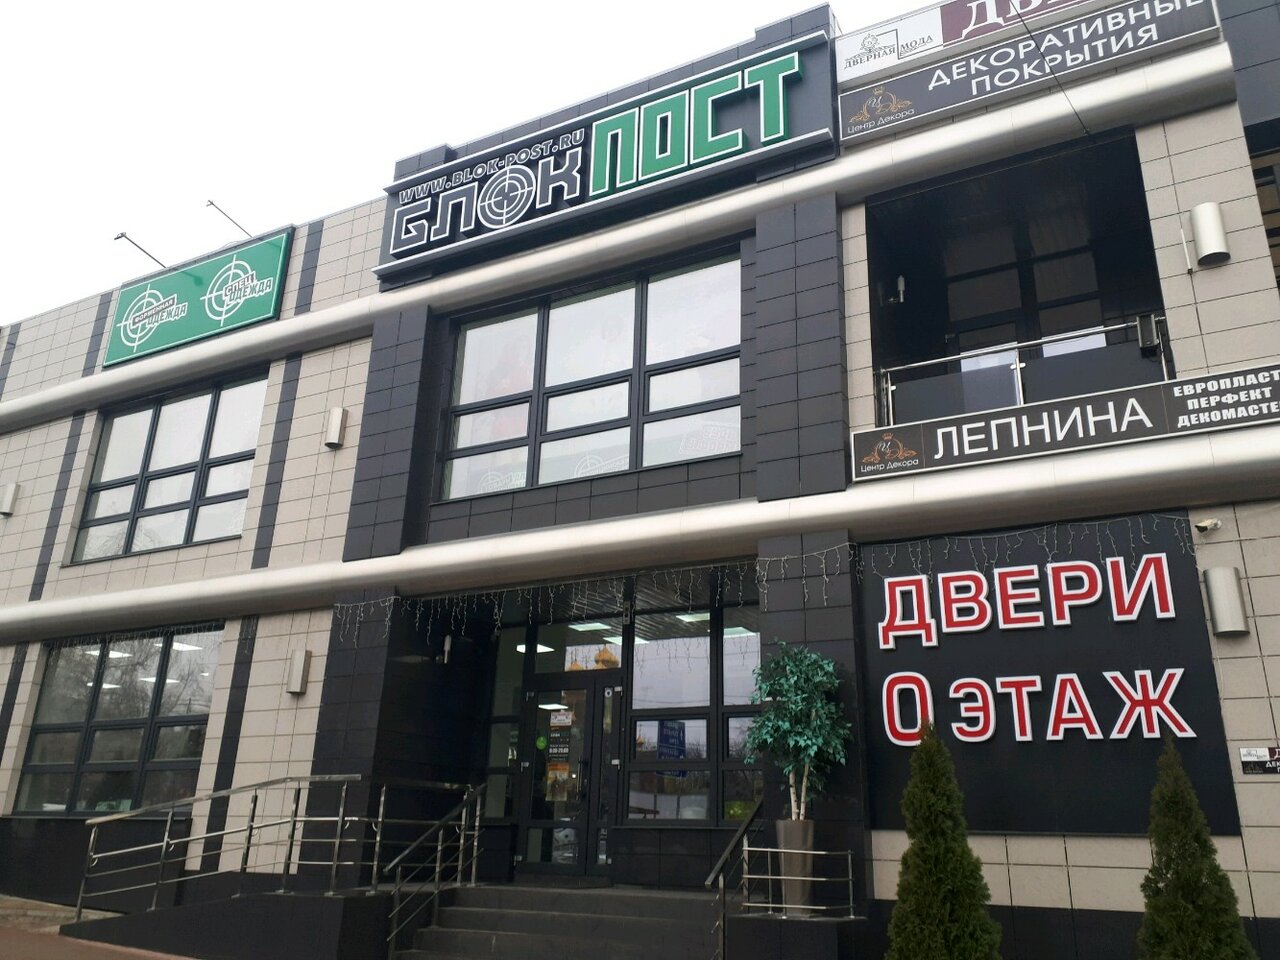 Вход в армейский магазин "Блокпост" на Щорса в Белгороде